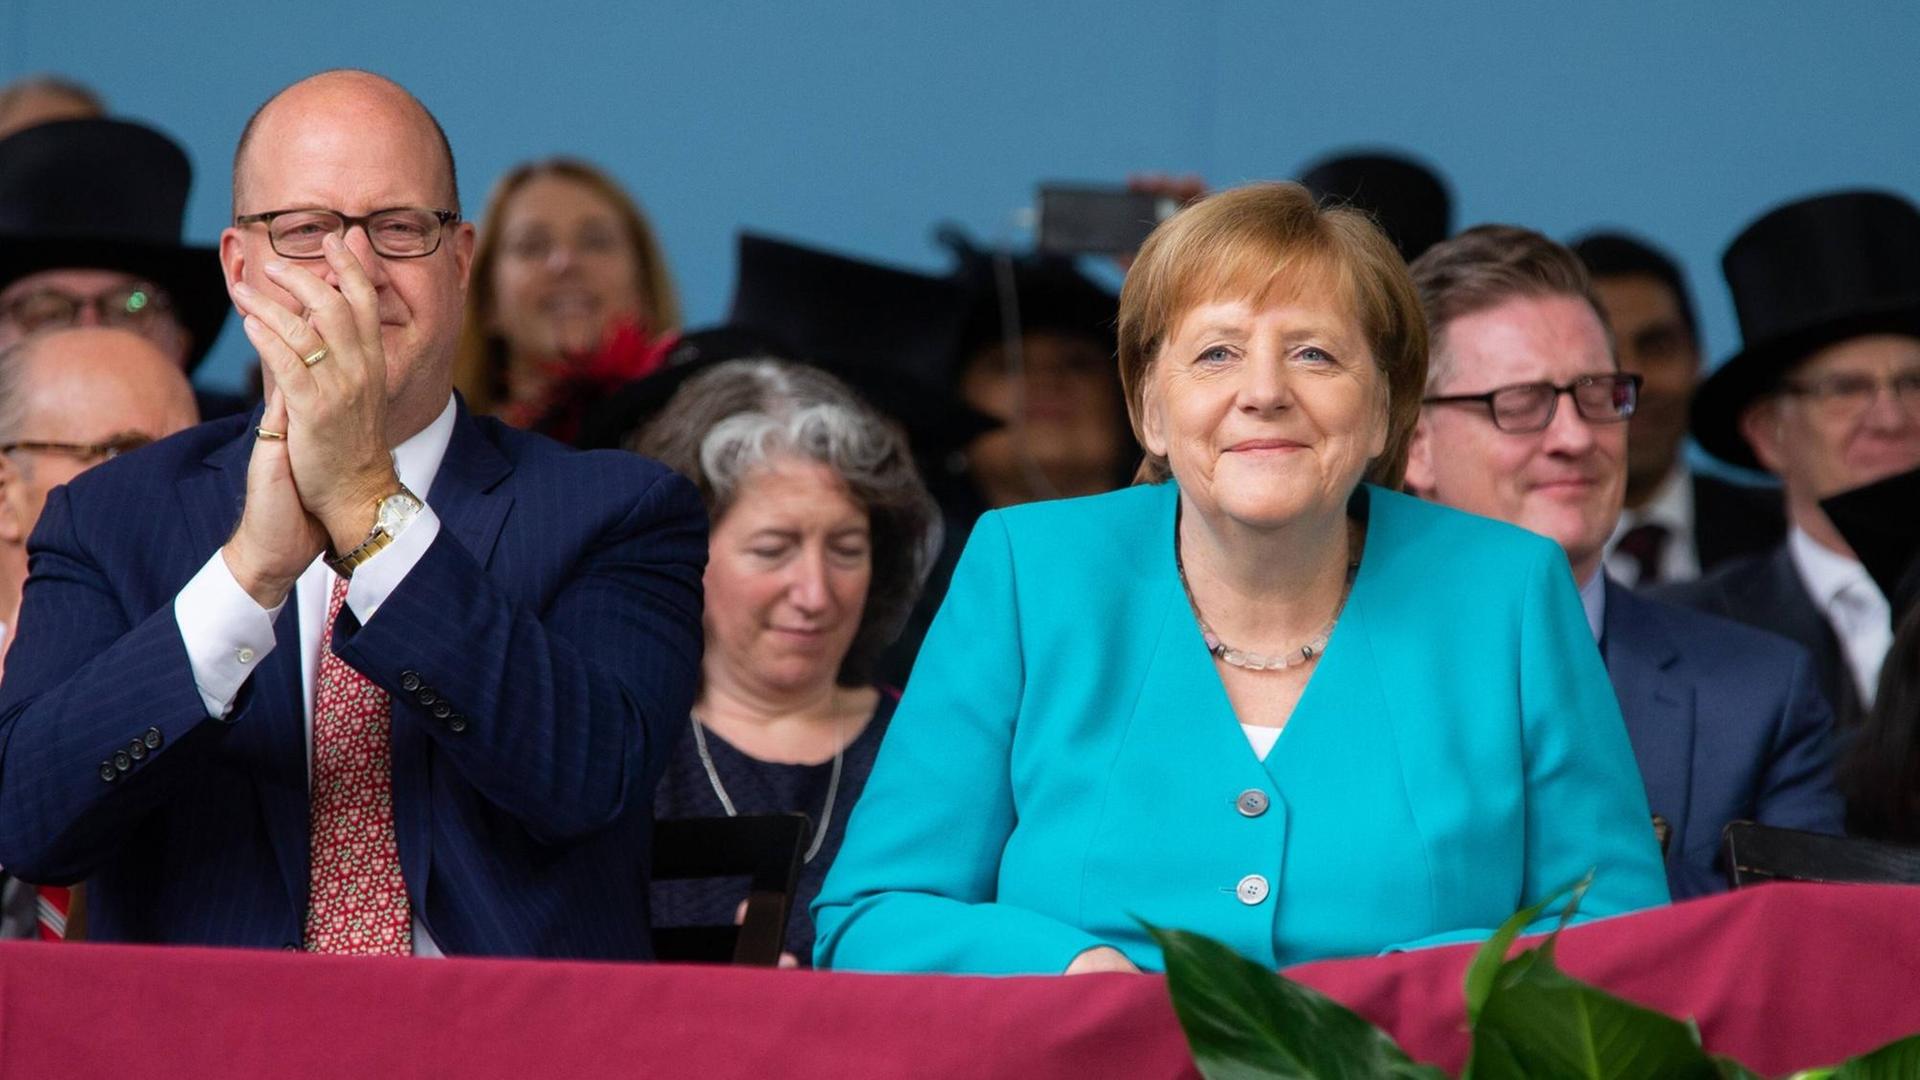 US-Eliteuniversität Harvard verleiht Angela Merkel die Ehrendoktorwürde: Zuschauer applaudieren Merkel vor ihrer Rede im Terecententary Theatre auf de mCampus.